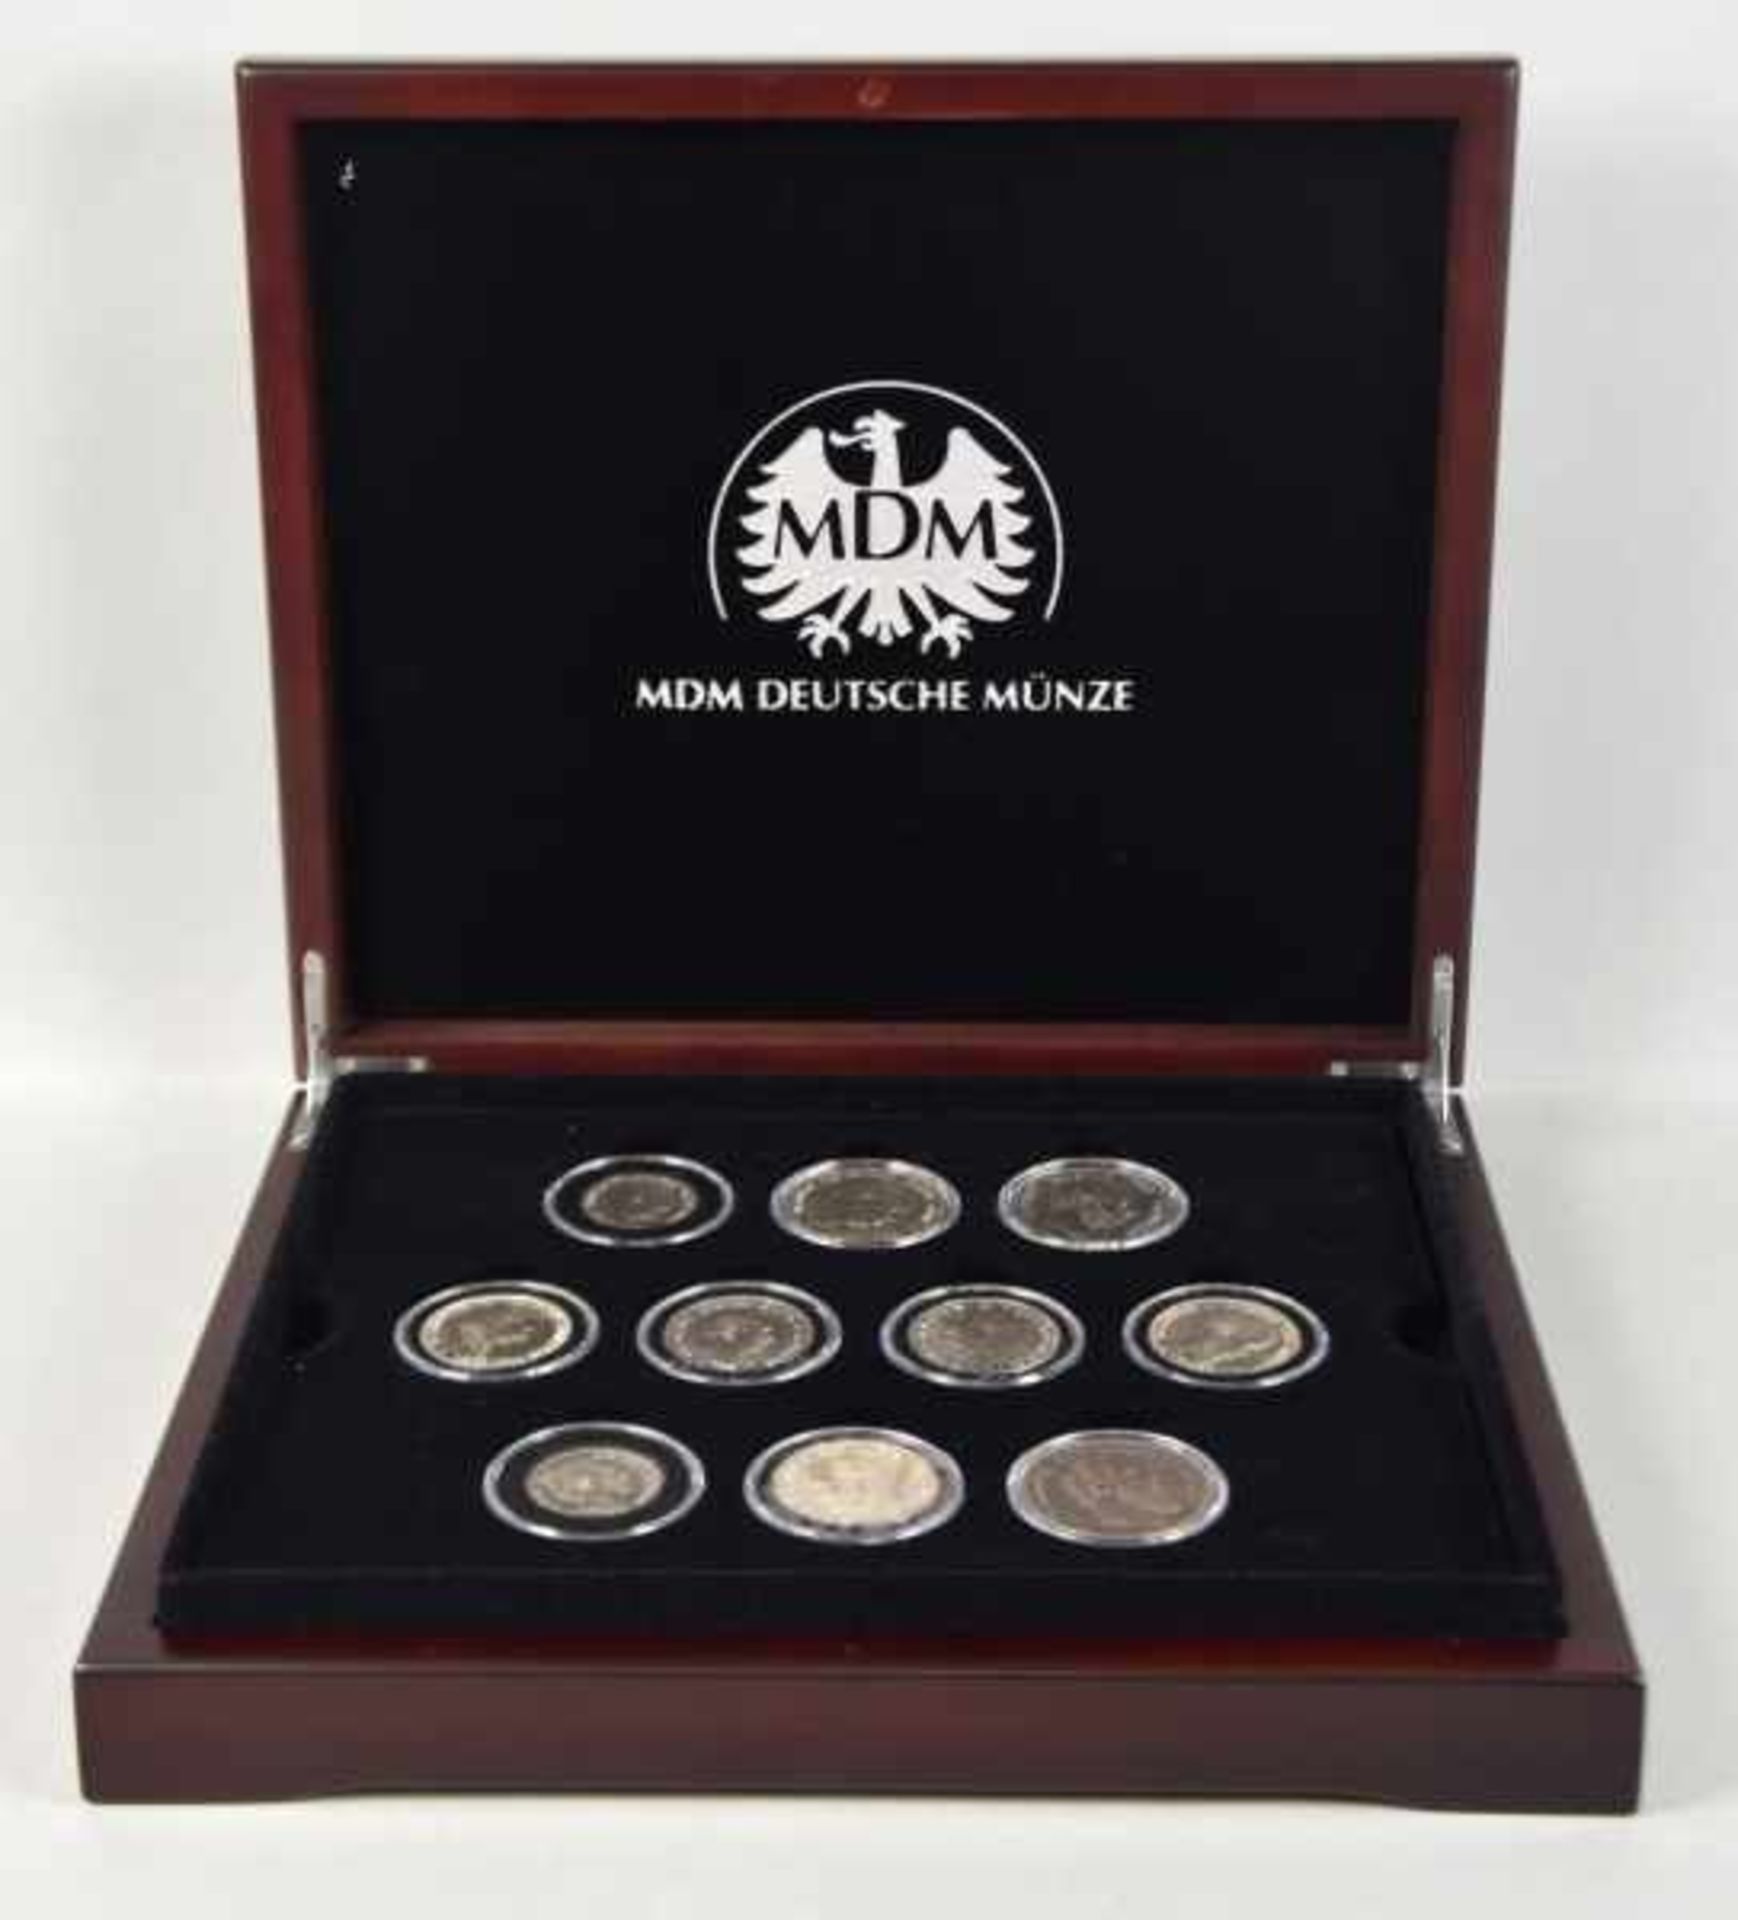 KLEINE MÜNZSAMMLUNG Silbermünzen Deutsches Reich: 3x5 Mark, 5x3 Mark, 2x2 Mark, Preussen, Bayern,